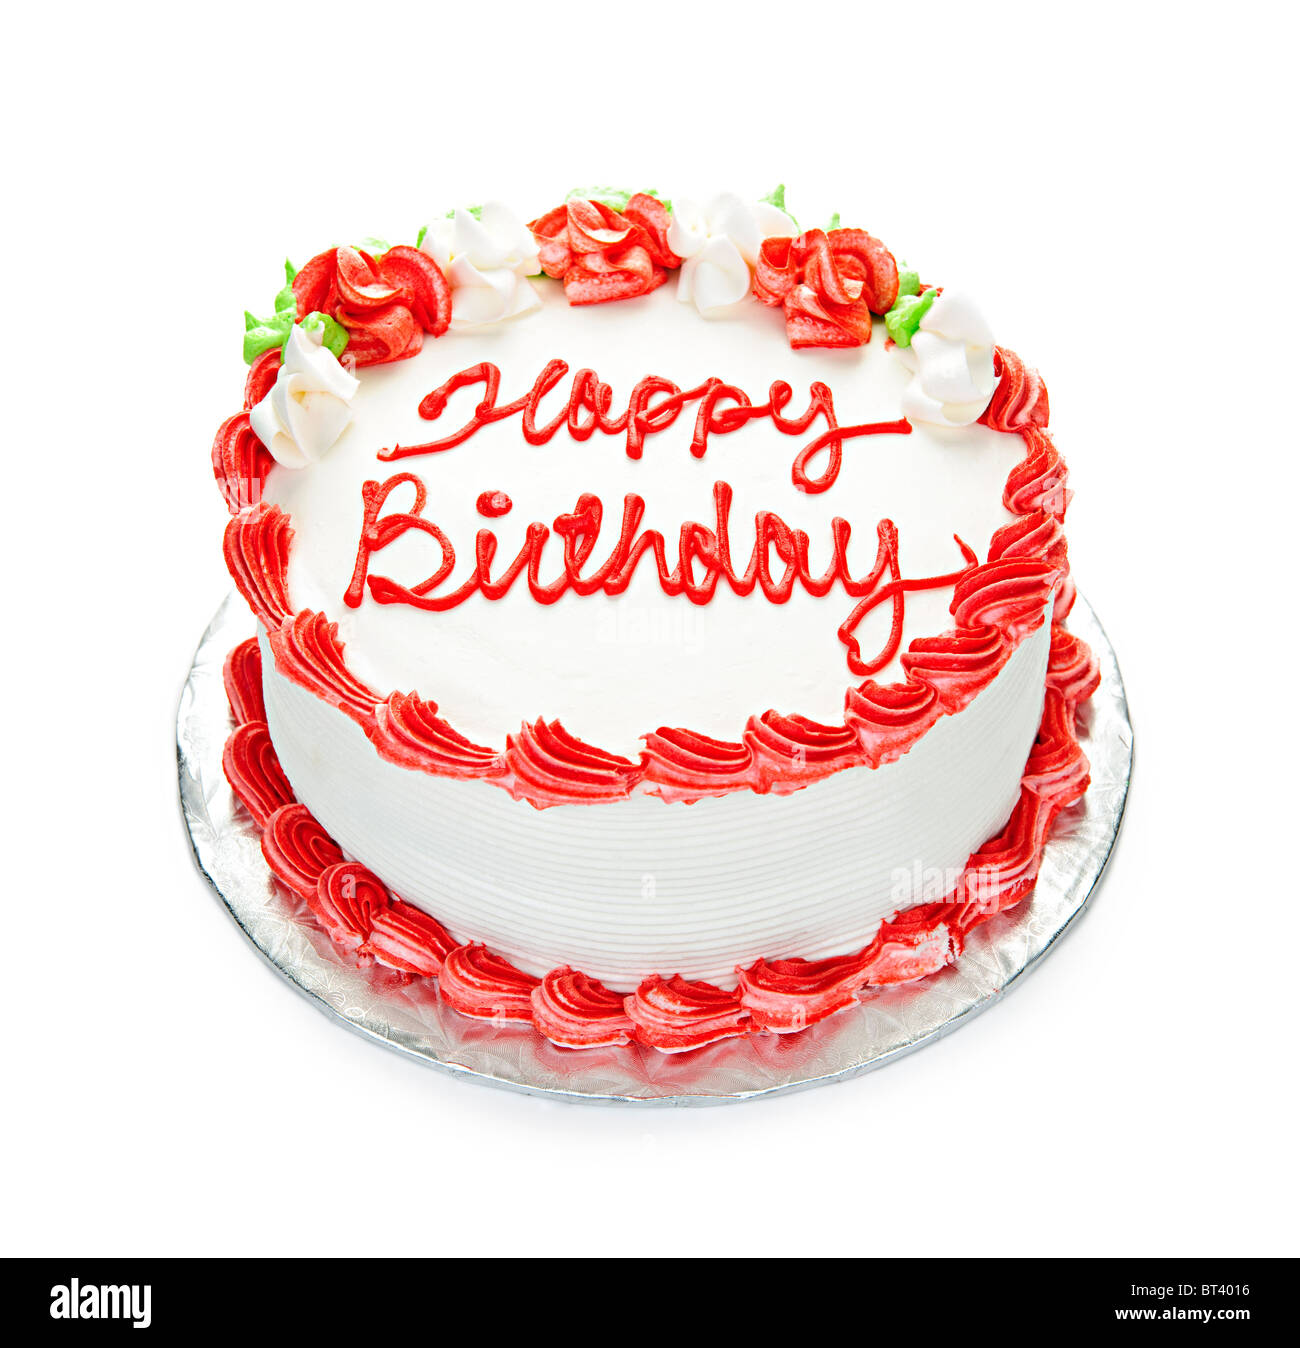 Anniversaire gâteau avec glaçage blanc et rouge isolated on white Banque D'Images